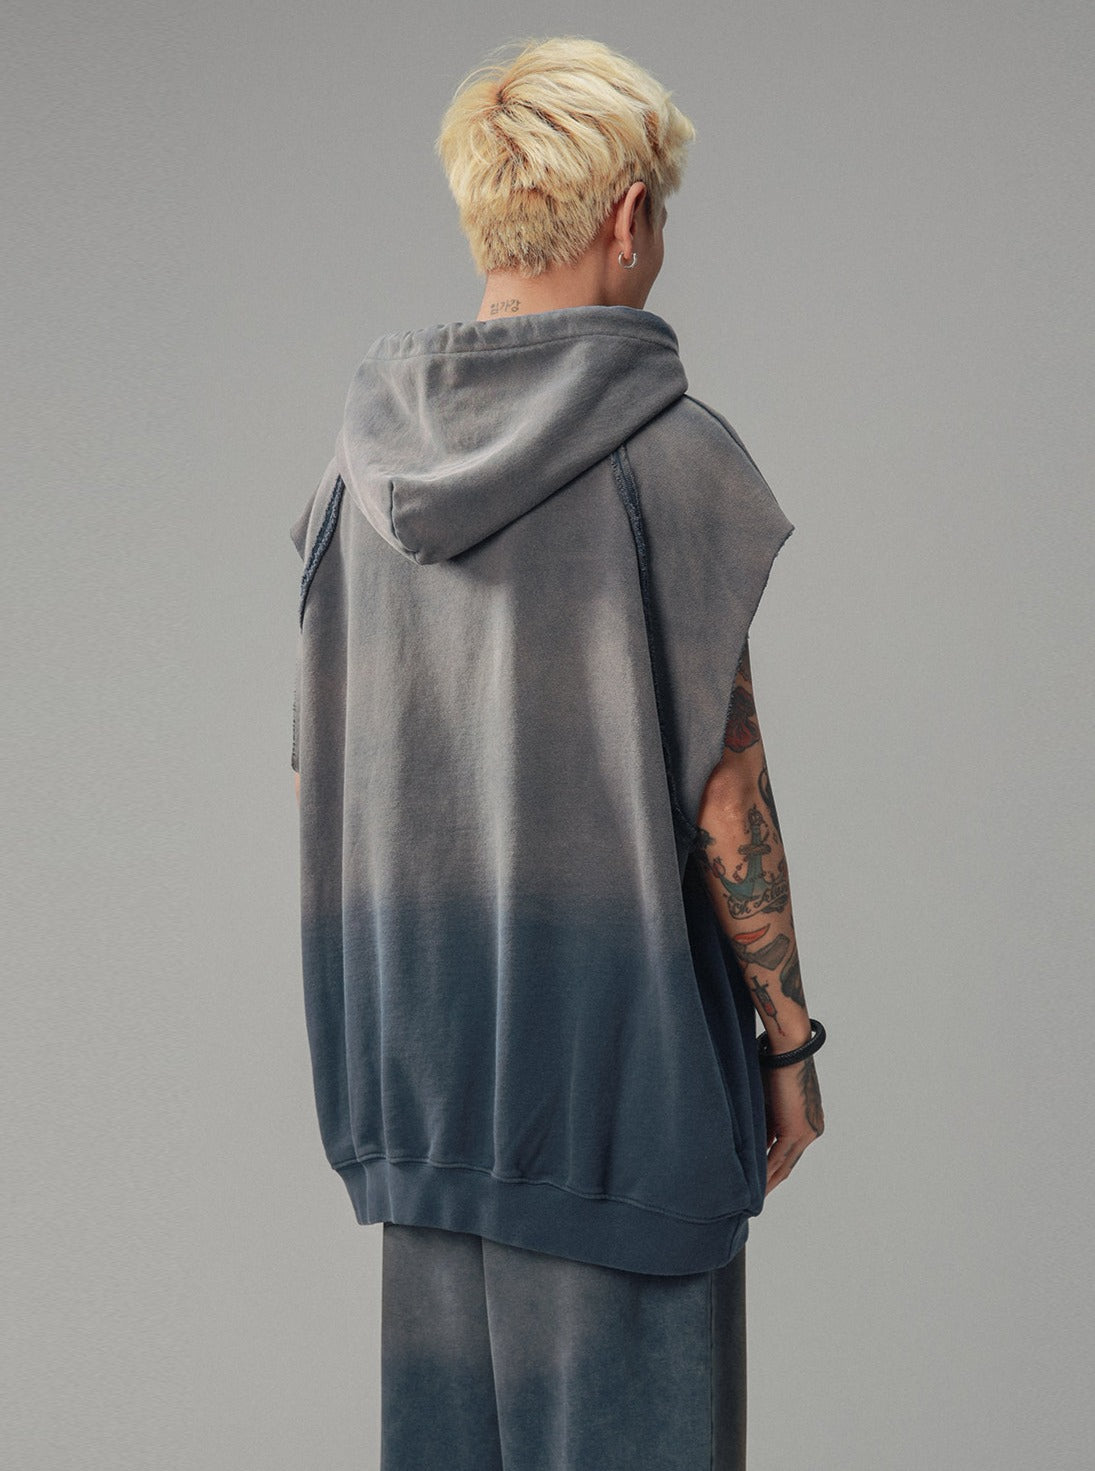 Wash Distressed Design Sweatshirt Vest Top